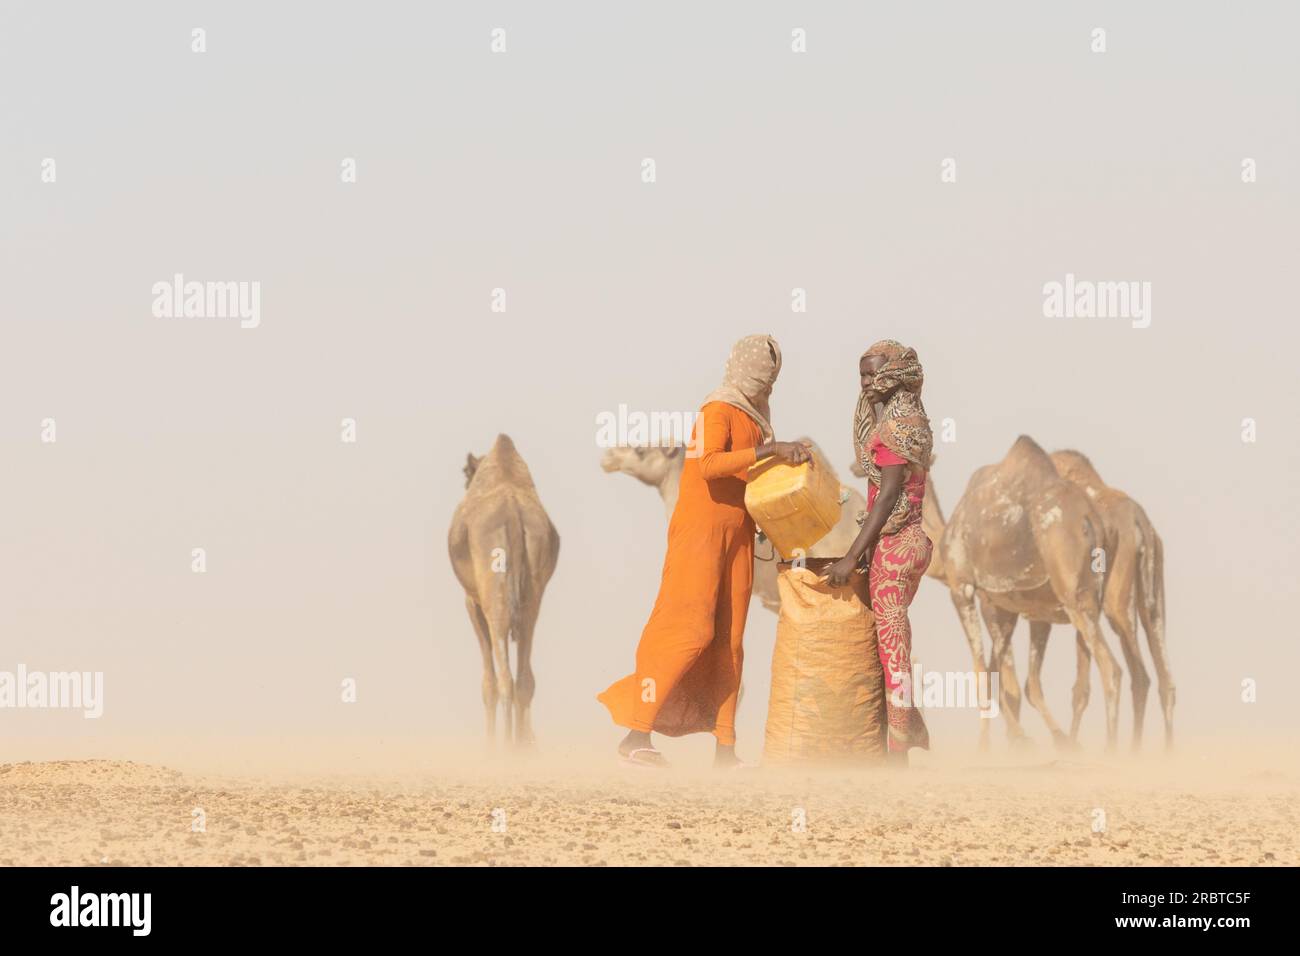 Inmitten eines wirbelnden Staubsturms in der Sahara sammeln tschadische Frauen, lebhaft in ihrer traditionellen Kleidung, beharrlich Kamelmist. Stockfoto